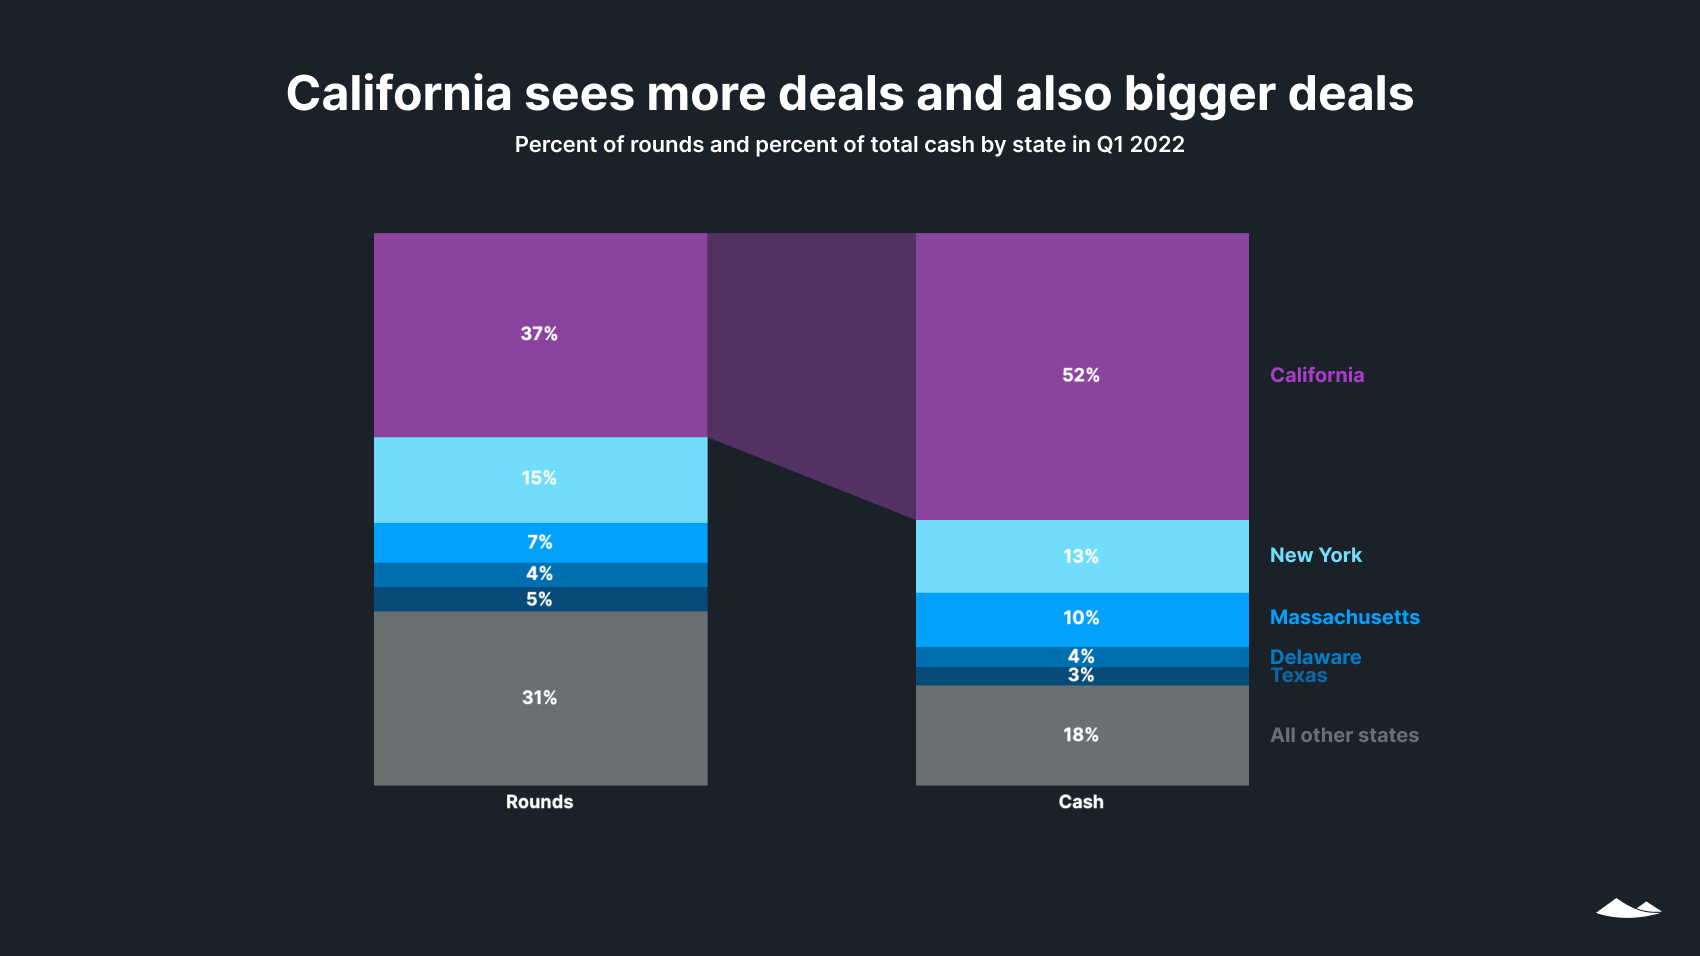 California sees more deals and also bigger deals